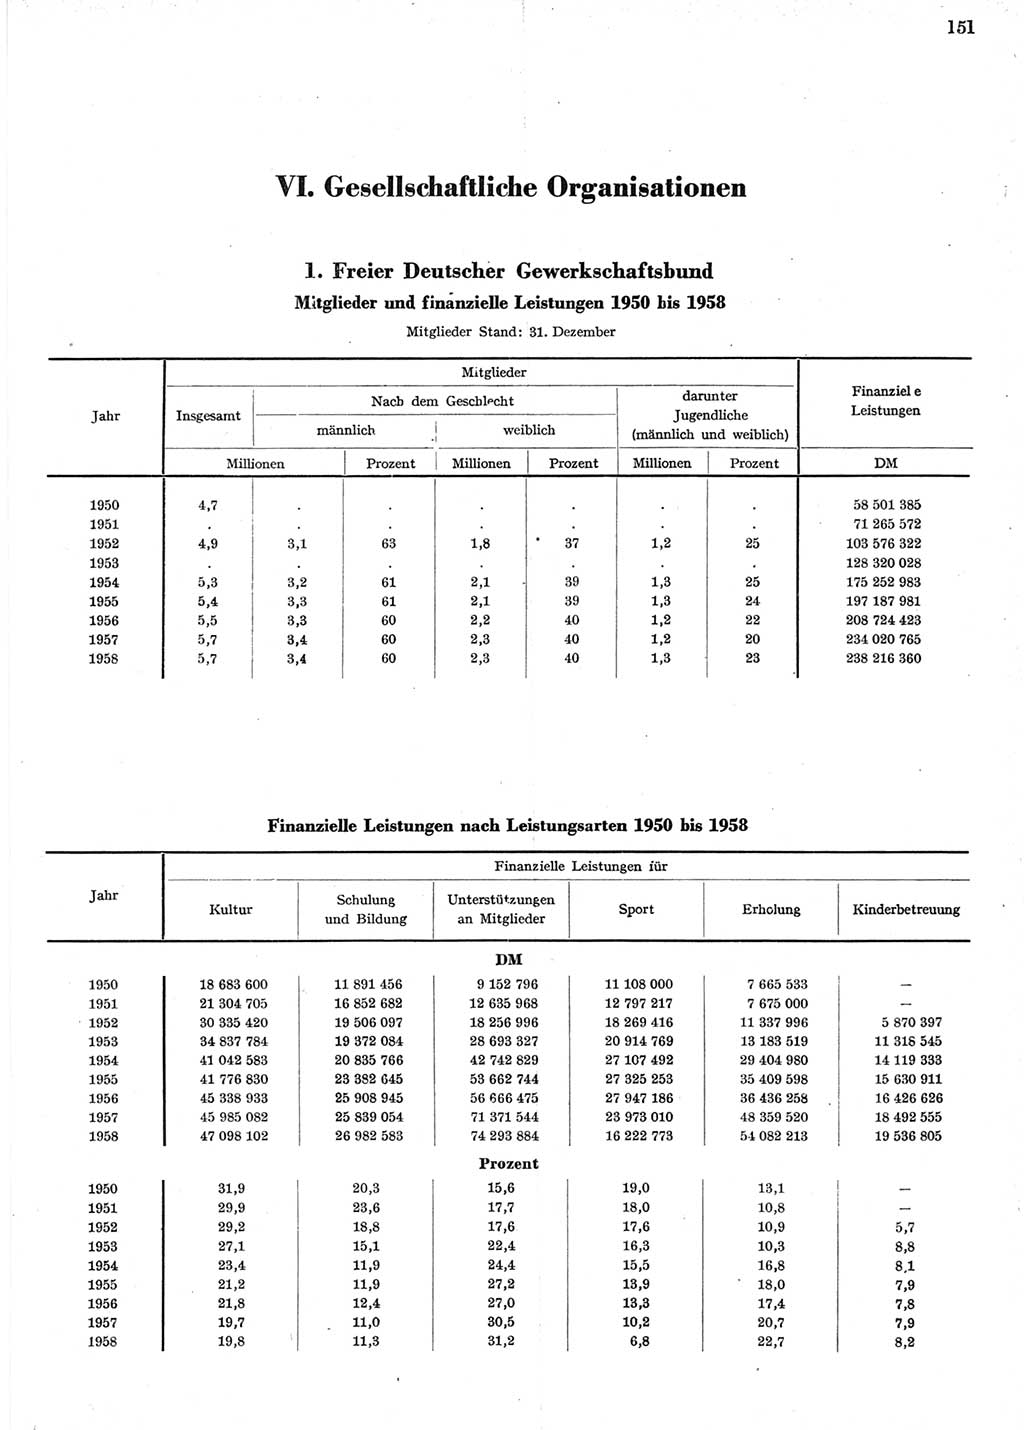 Statistisches Jahrbuch der Deutschen Demokratischen Republik (DDR) 1958, Seite 151 (Stat. Jb. DDR 1958, S. 151)